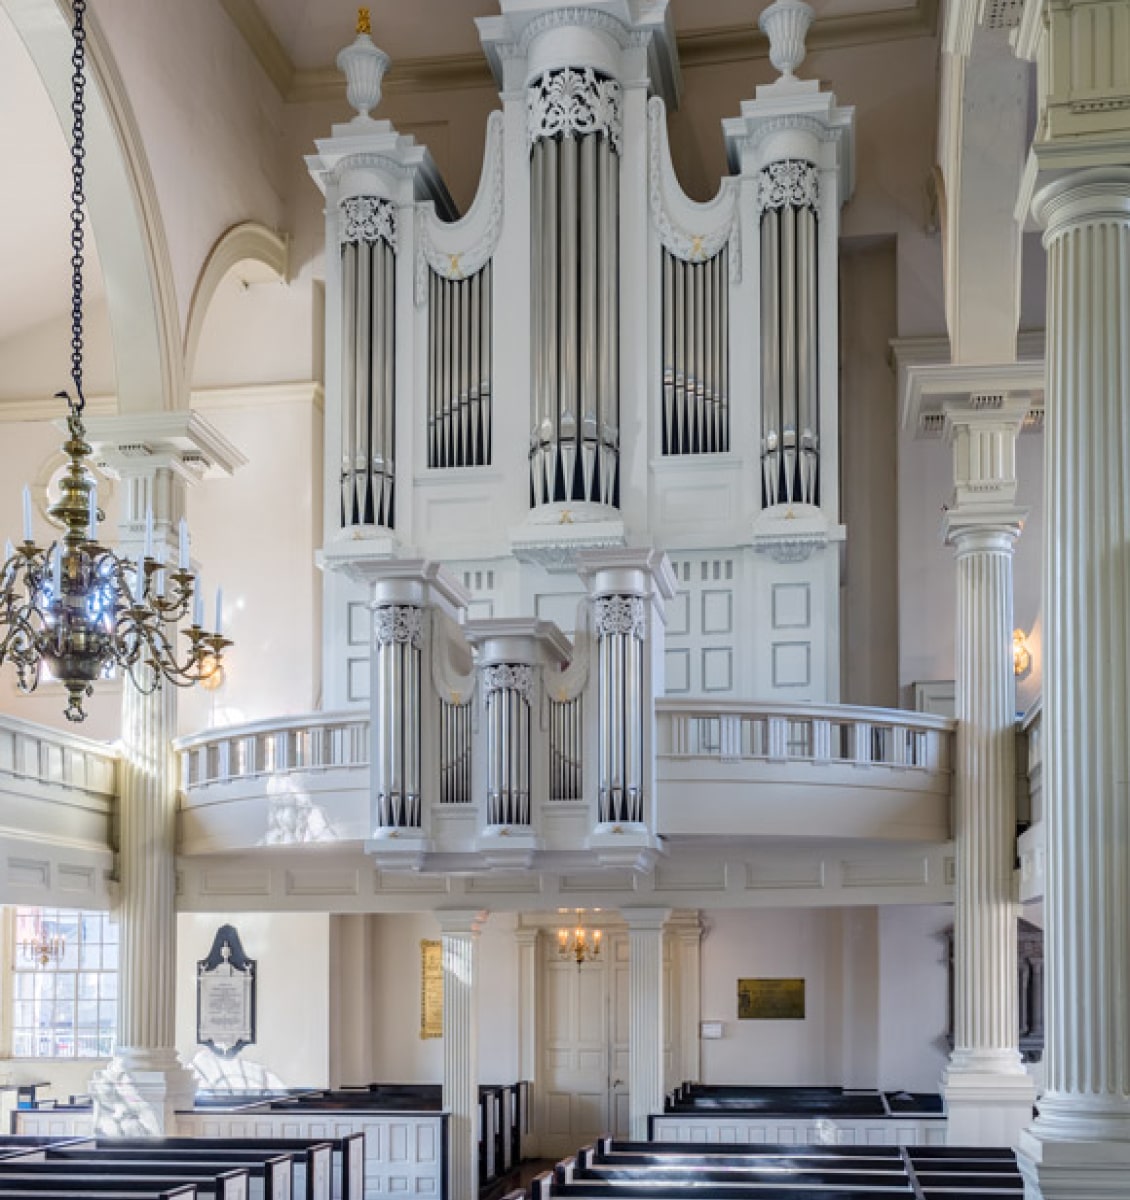 Becker Fondorf Christ Church Organ